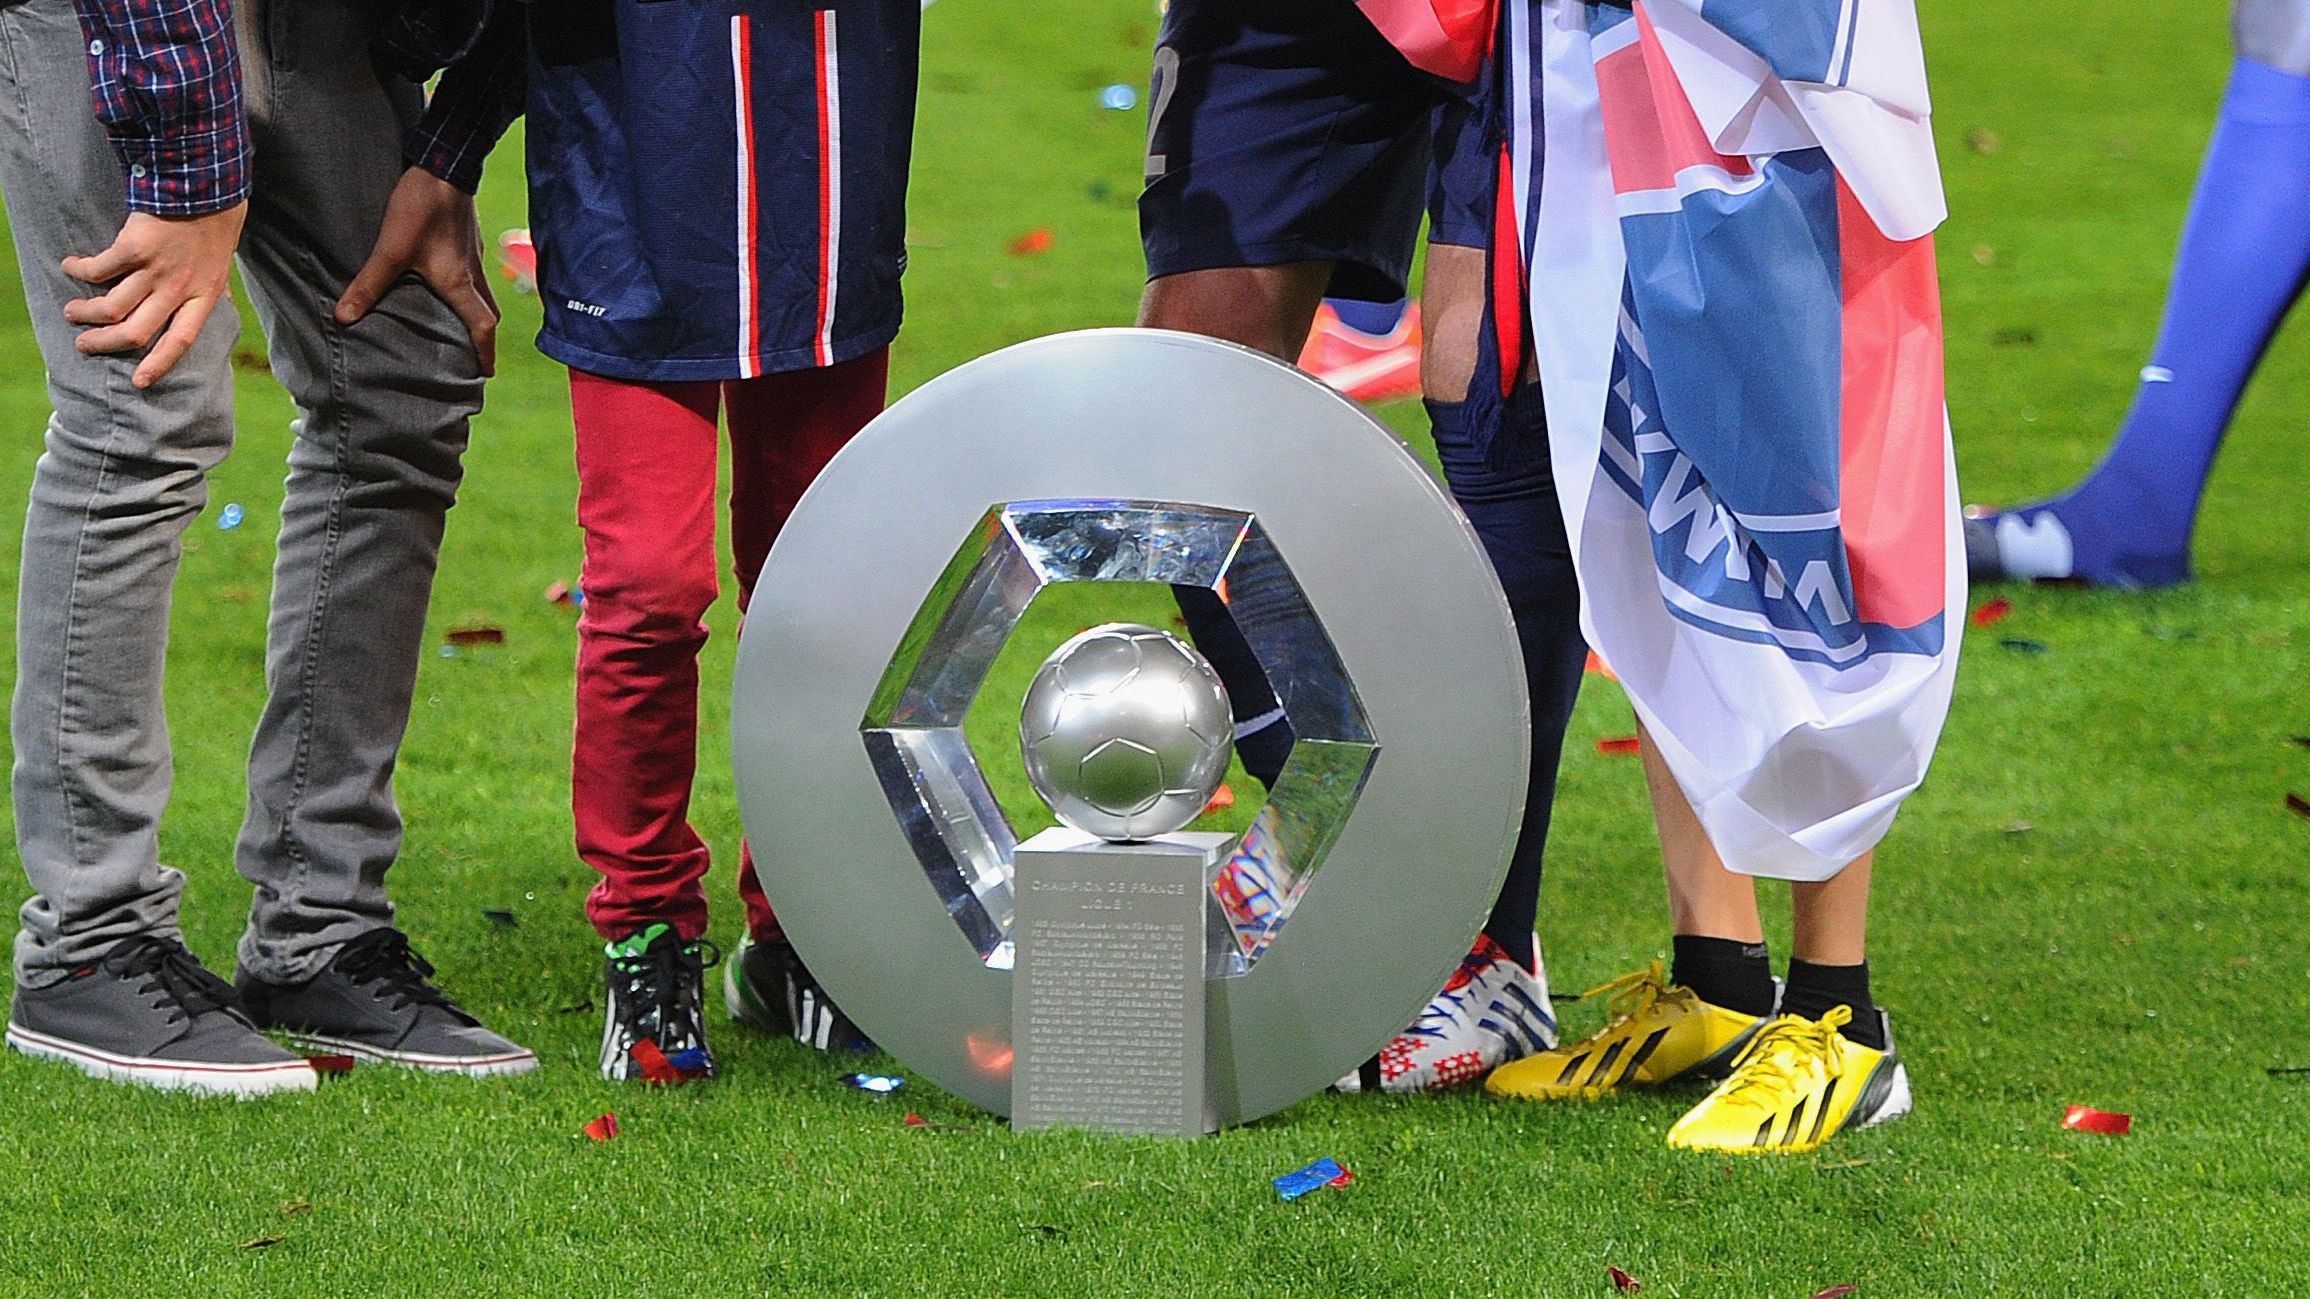 <strong>Platz 30: Ligue 1 (Fußball)</strong><br>Es ähnelt eher einem Denkmal als einer Trophäe. Wir sind nicht gänzlich überzeugt. Deswegen reicht es für den Sieger-Pokal der französischen Liga nur für einen hinteren Platz.